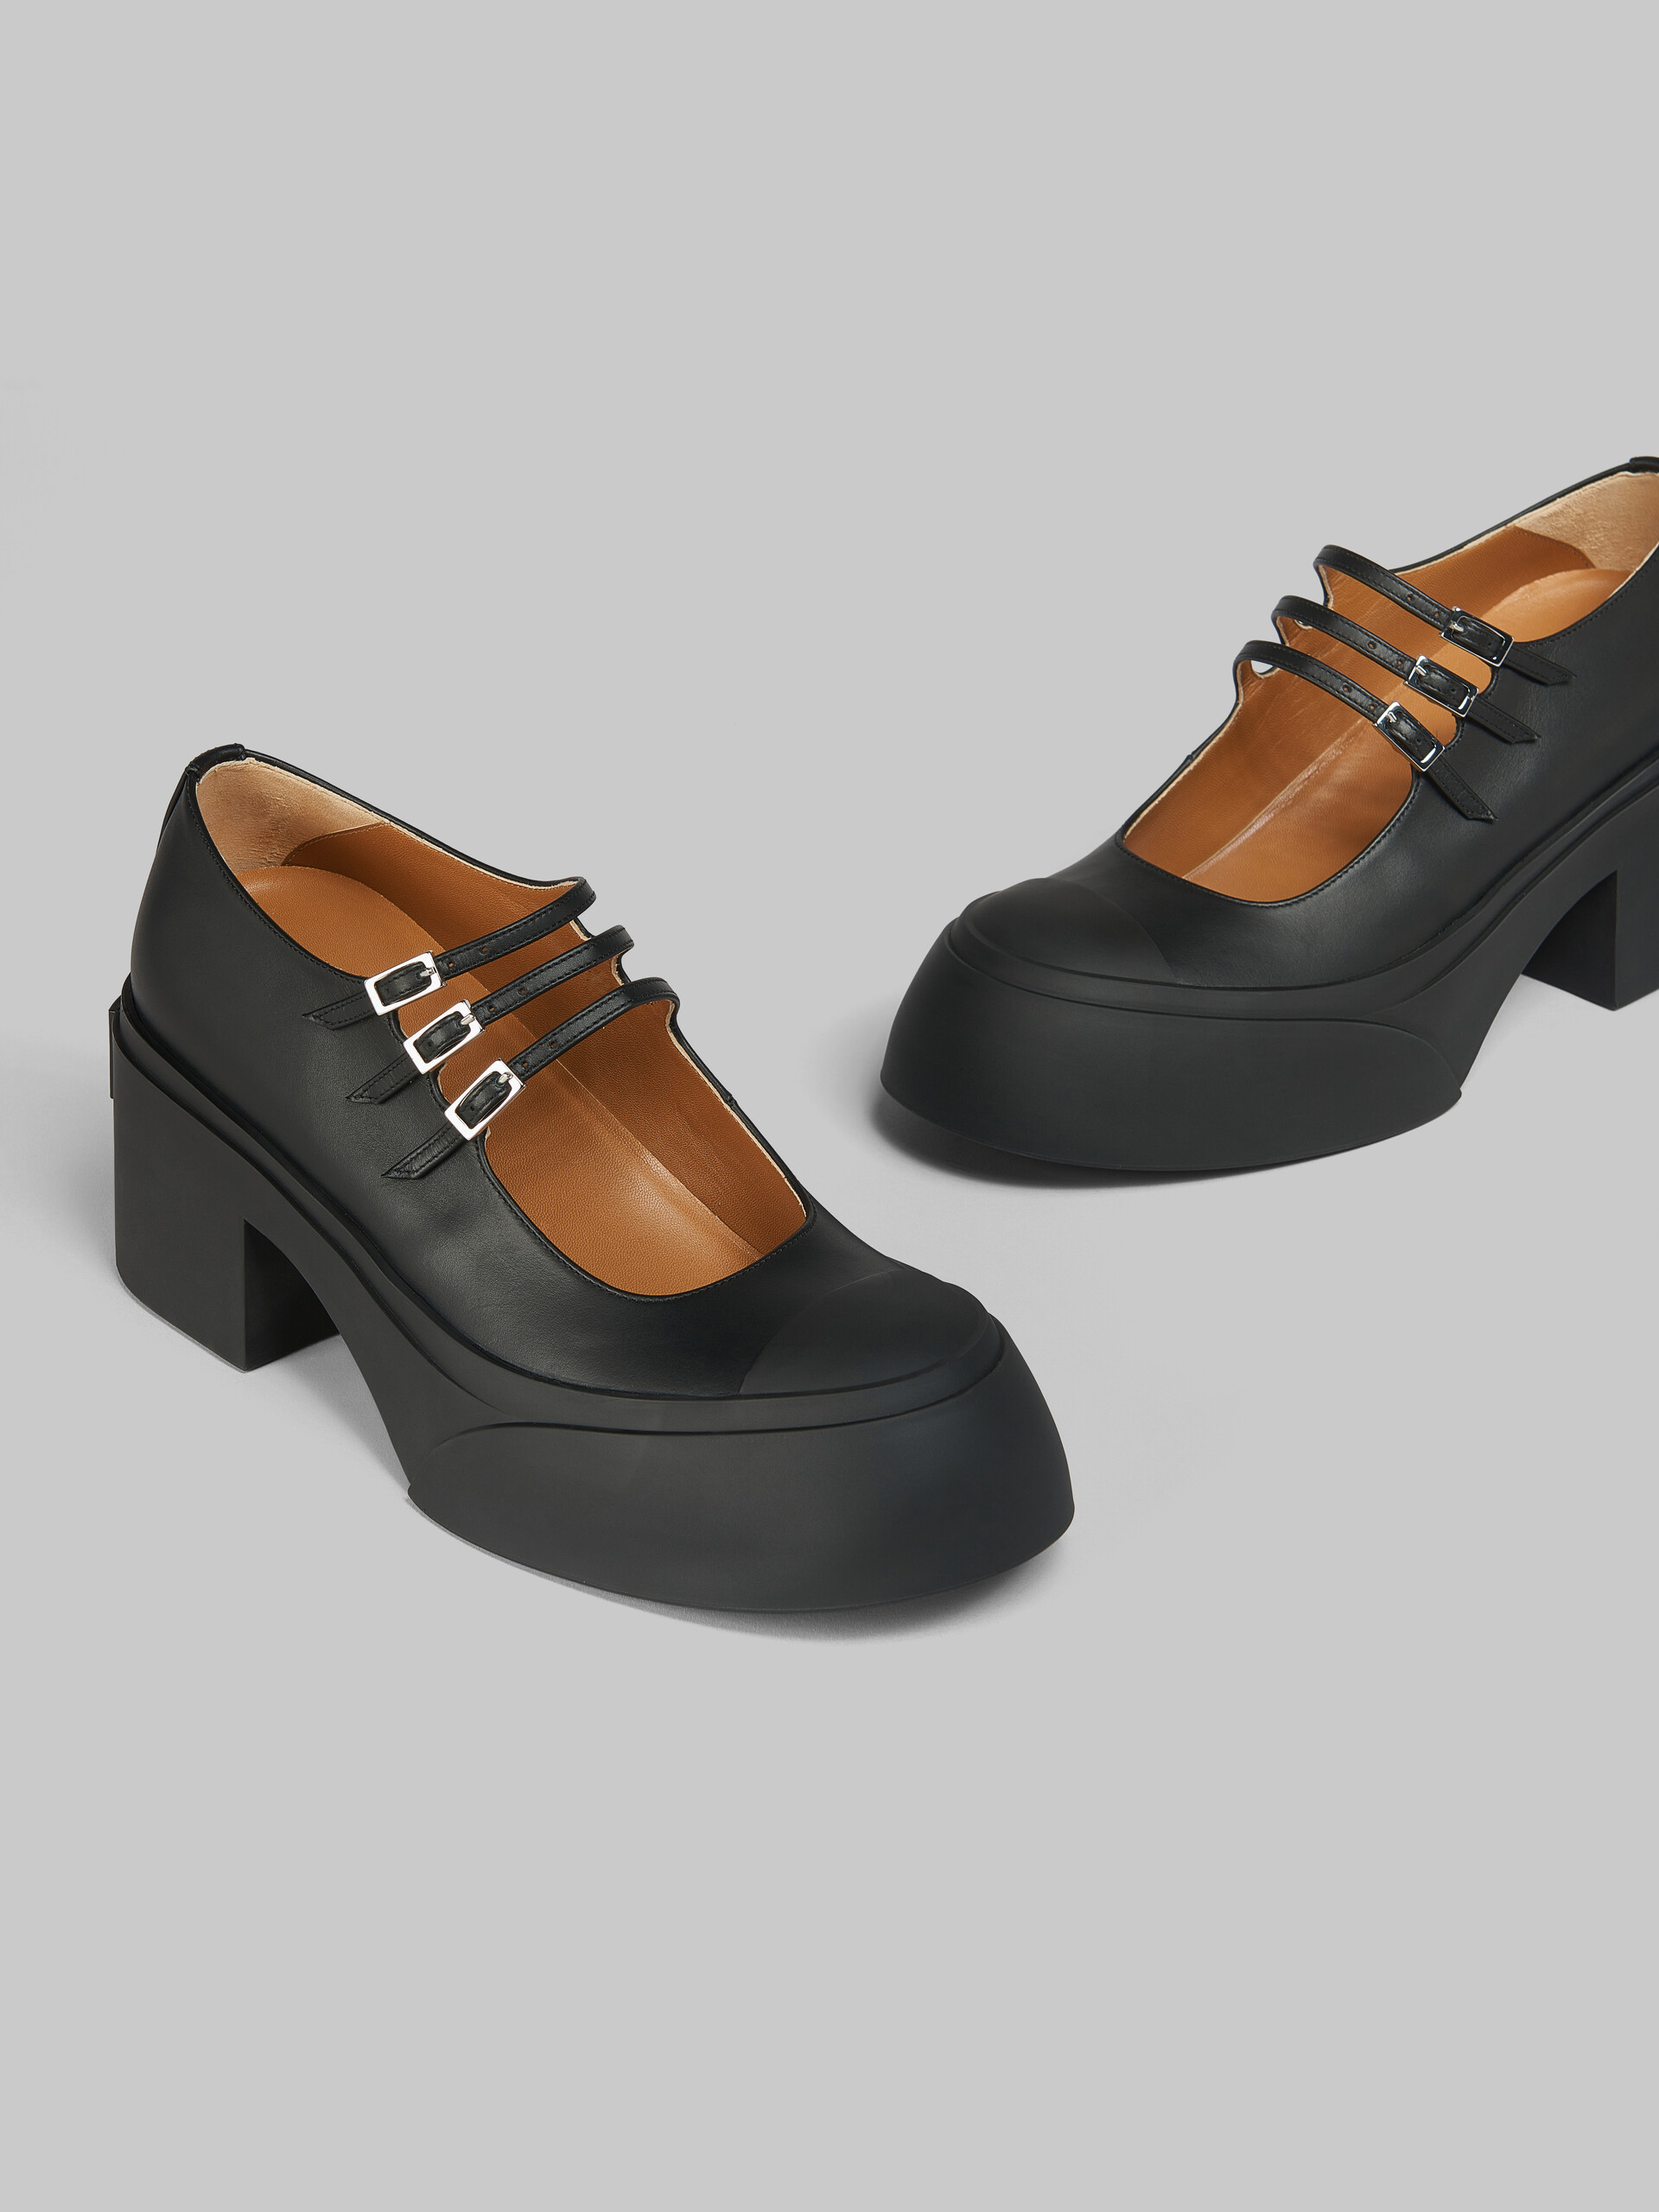 Zapatos Pablo estilo Mary Jane con triple hebilla de piel negra - Sneakers - Image 5